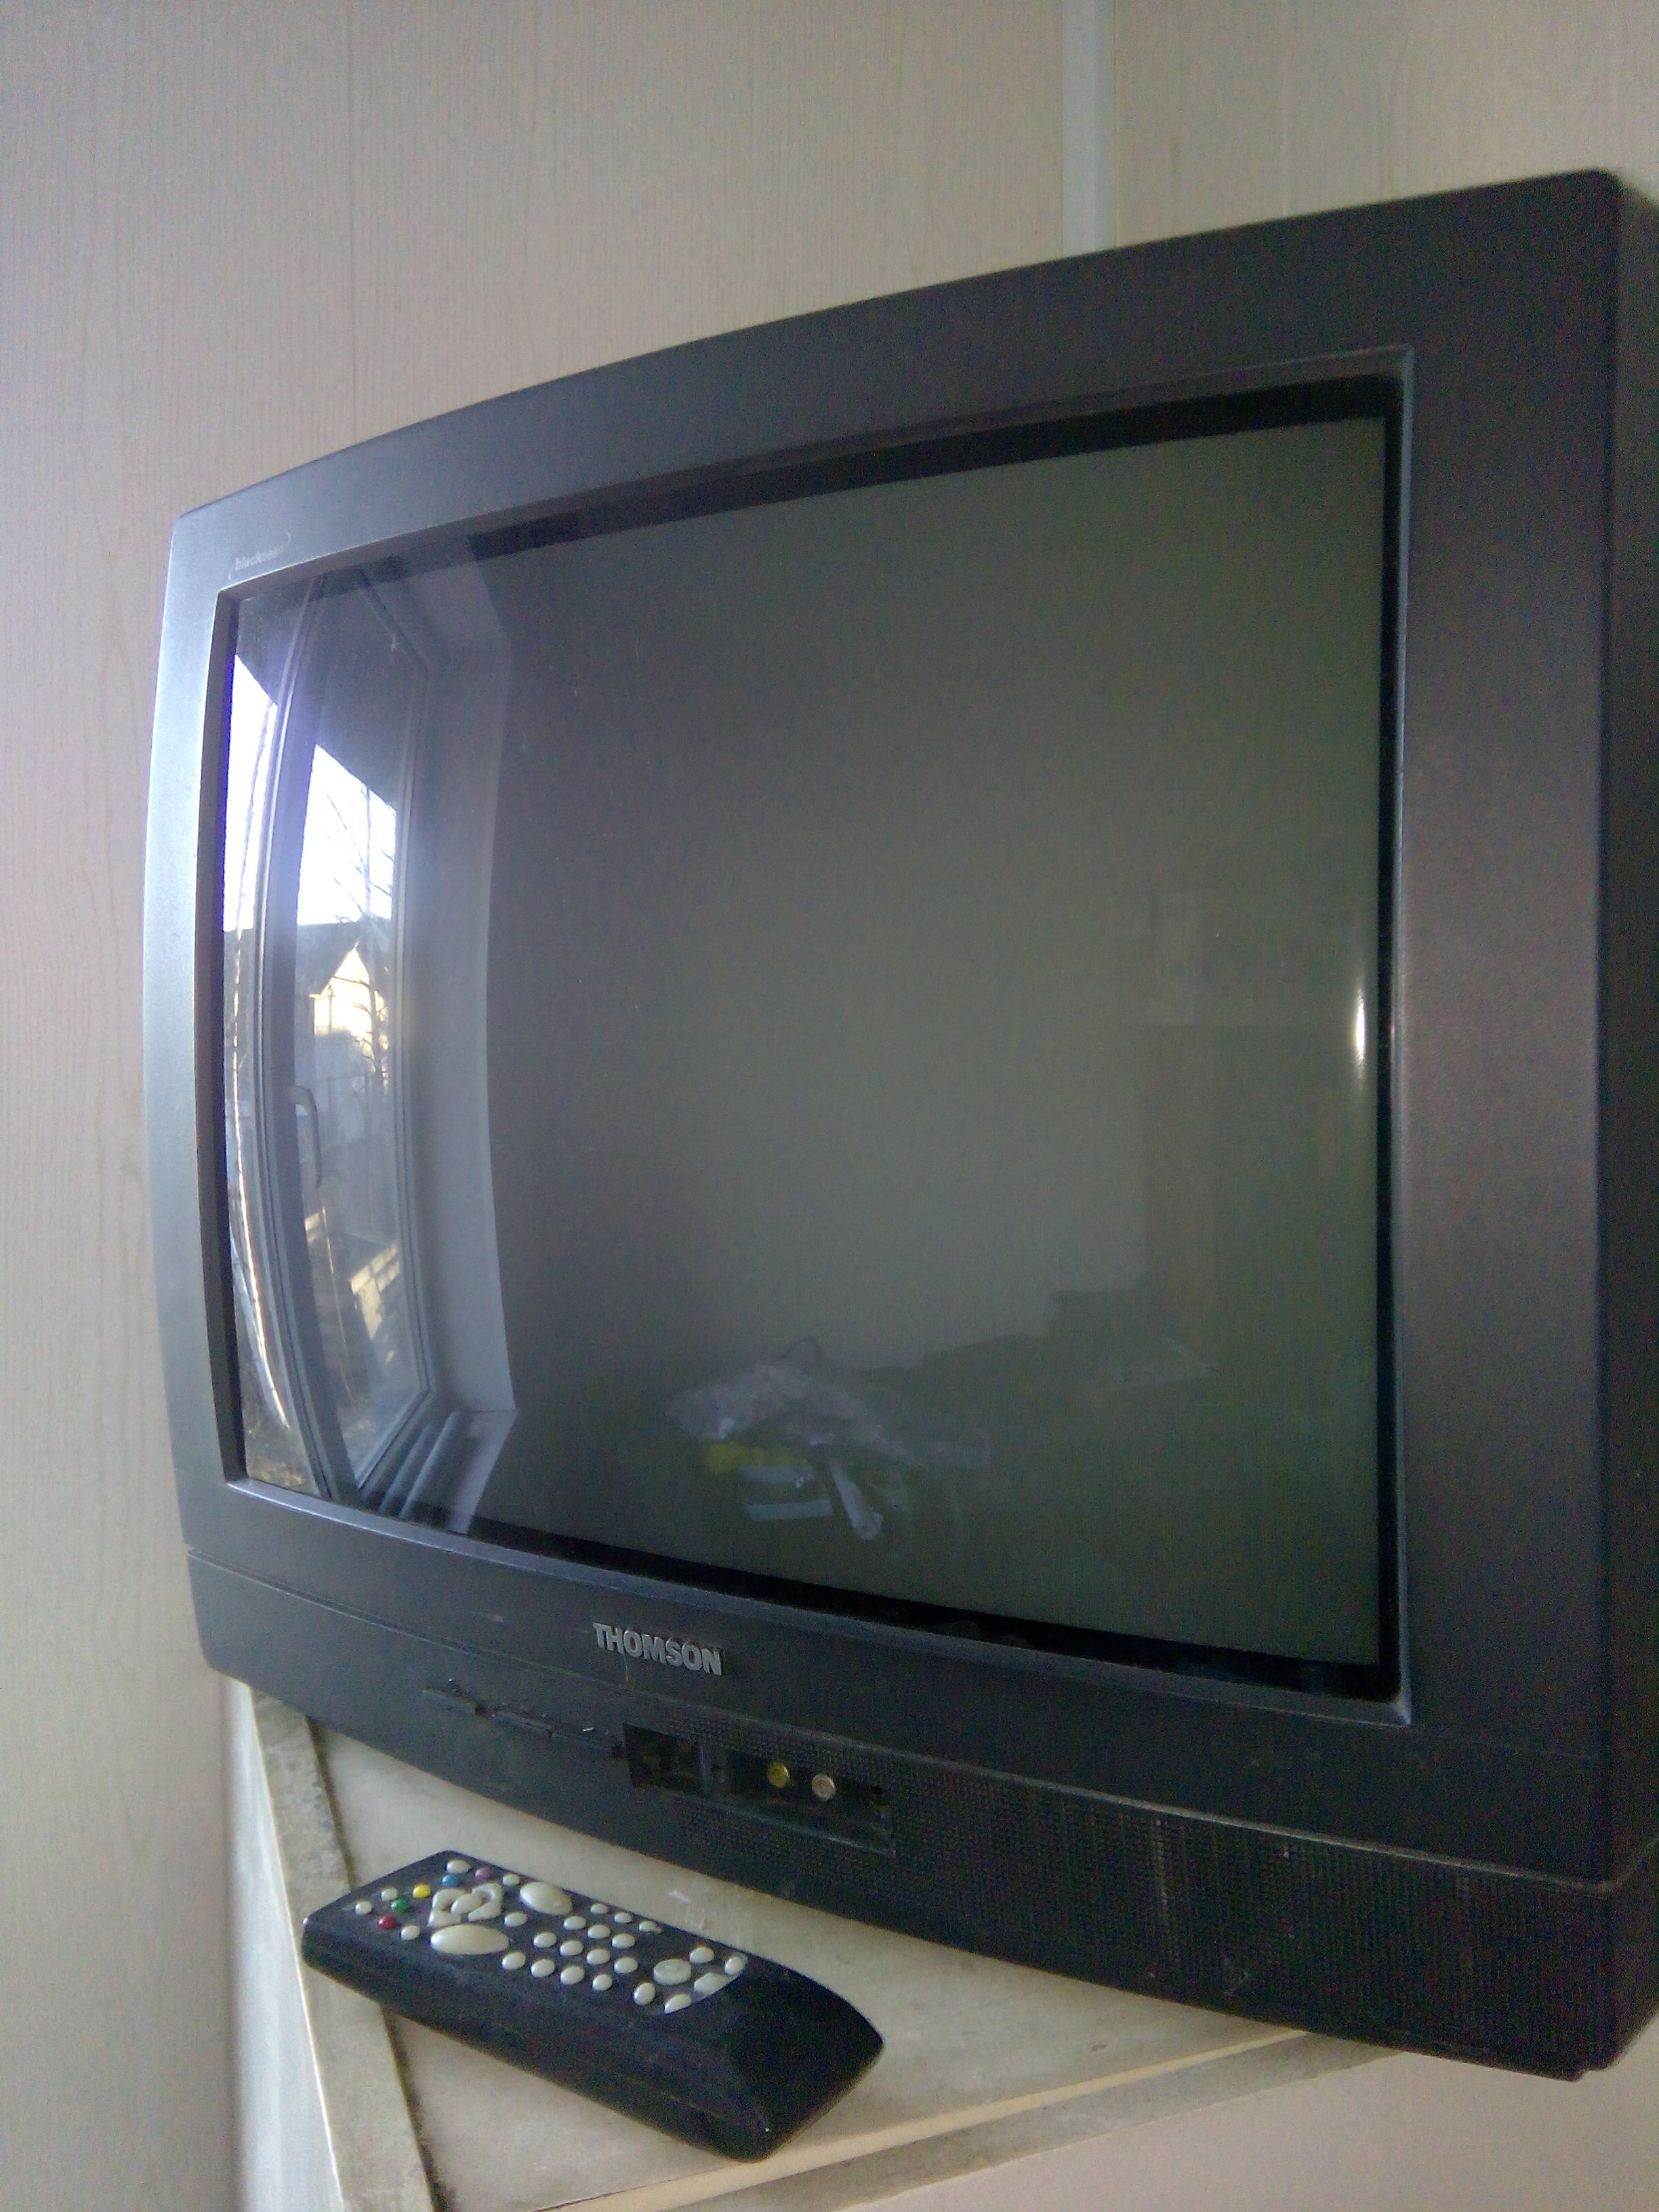 Куплю телевизор владикавказ. Телевизор Thomson 32 старый. Телевизор Томсон кинескопный. Старый телевизор Thomson Black Pearl. Телевизор Томпсон 55 2000г.